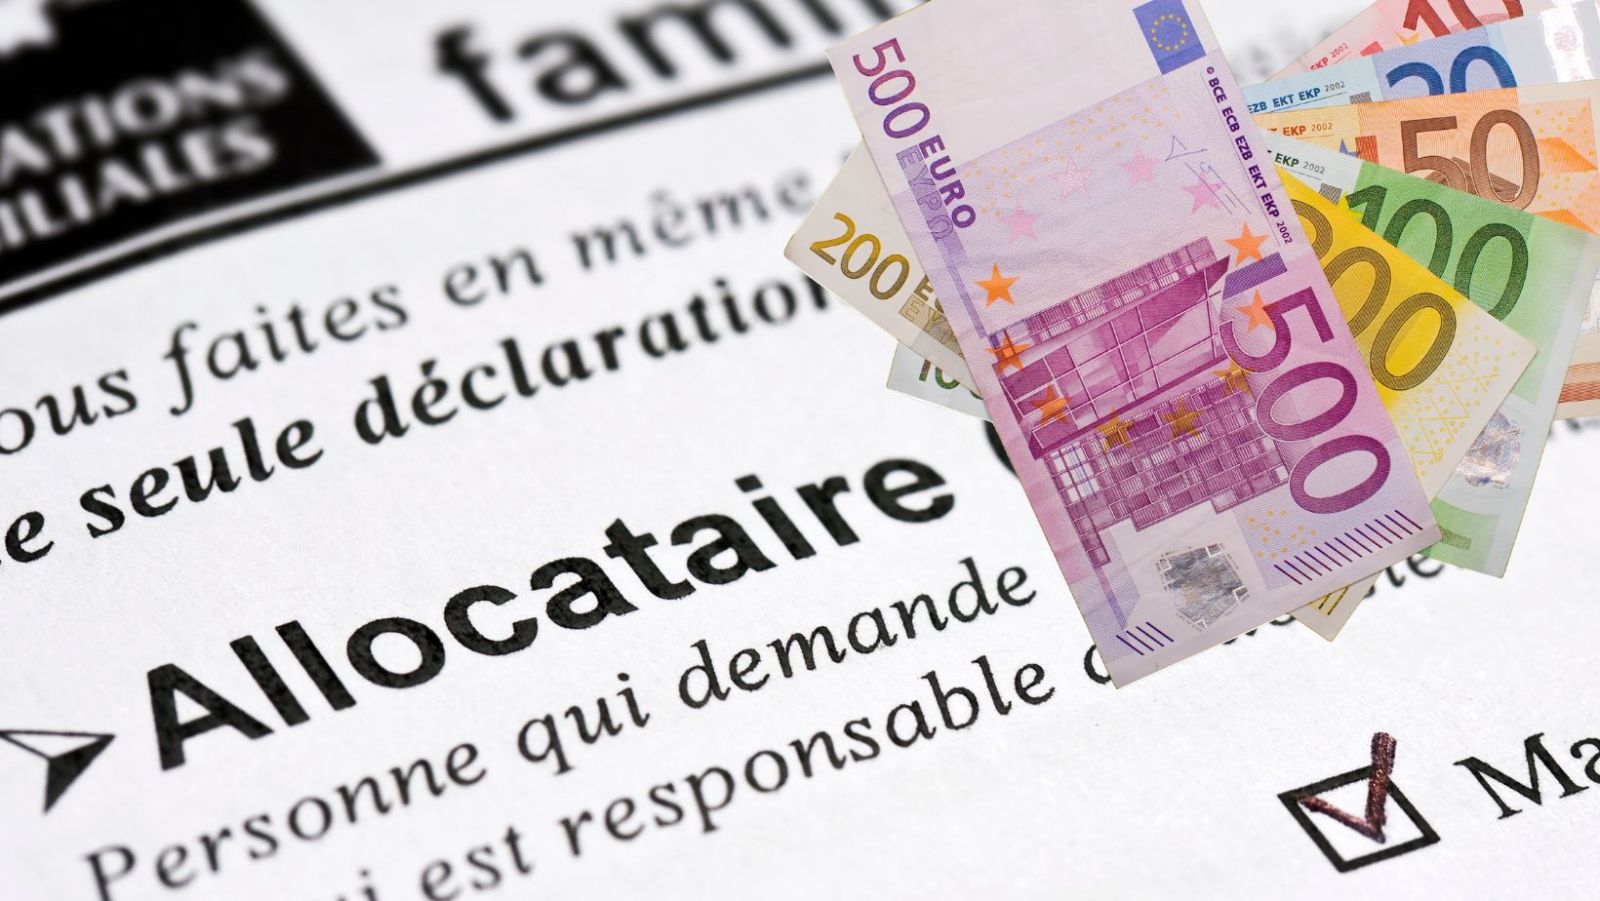 RSA aligné sur le SMIC (1398€) : la révolution sociale du quinquennat Macron